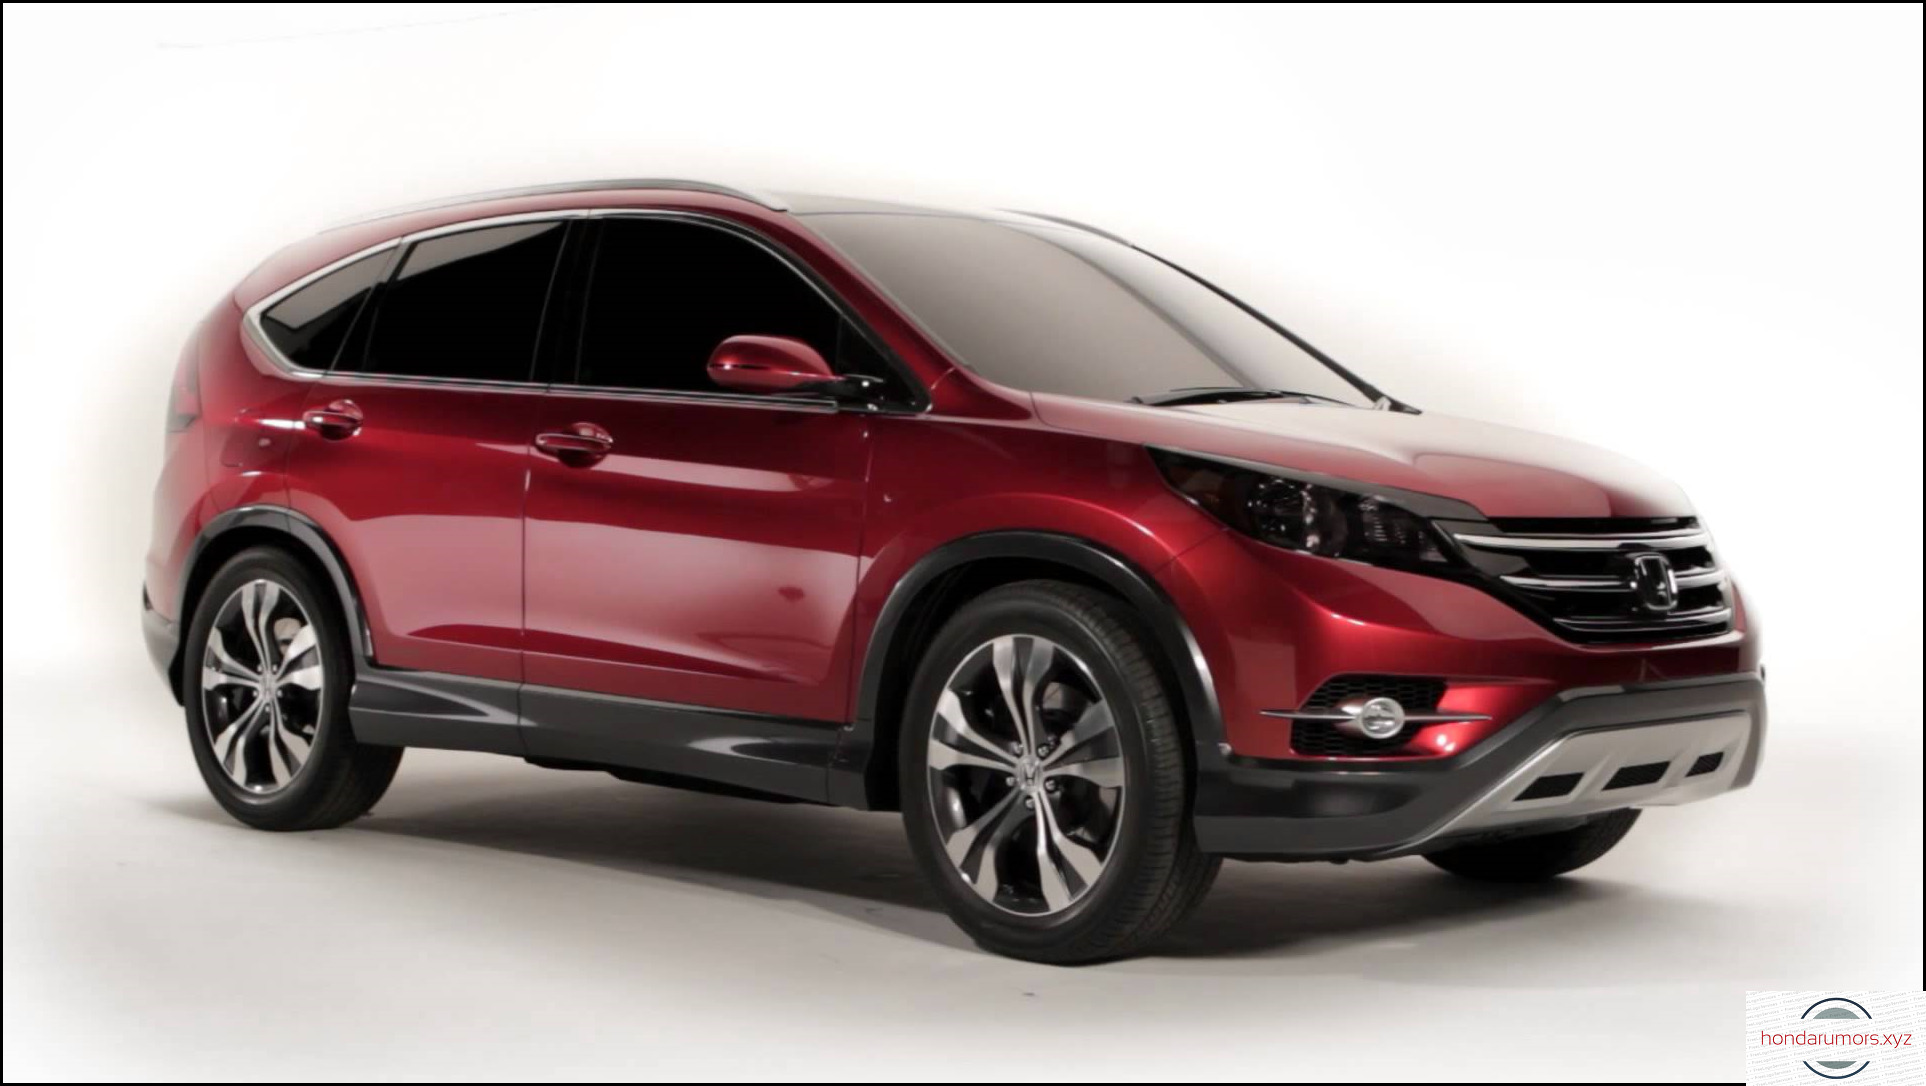 2020 Honda CRV Price